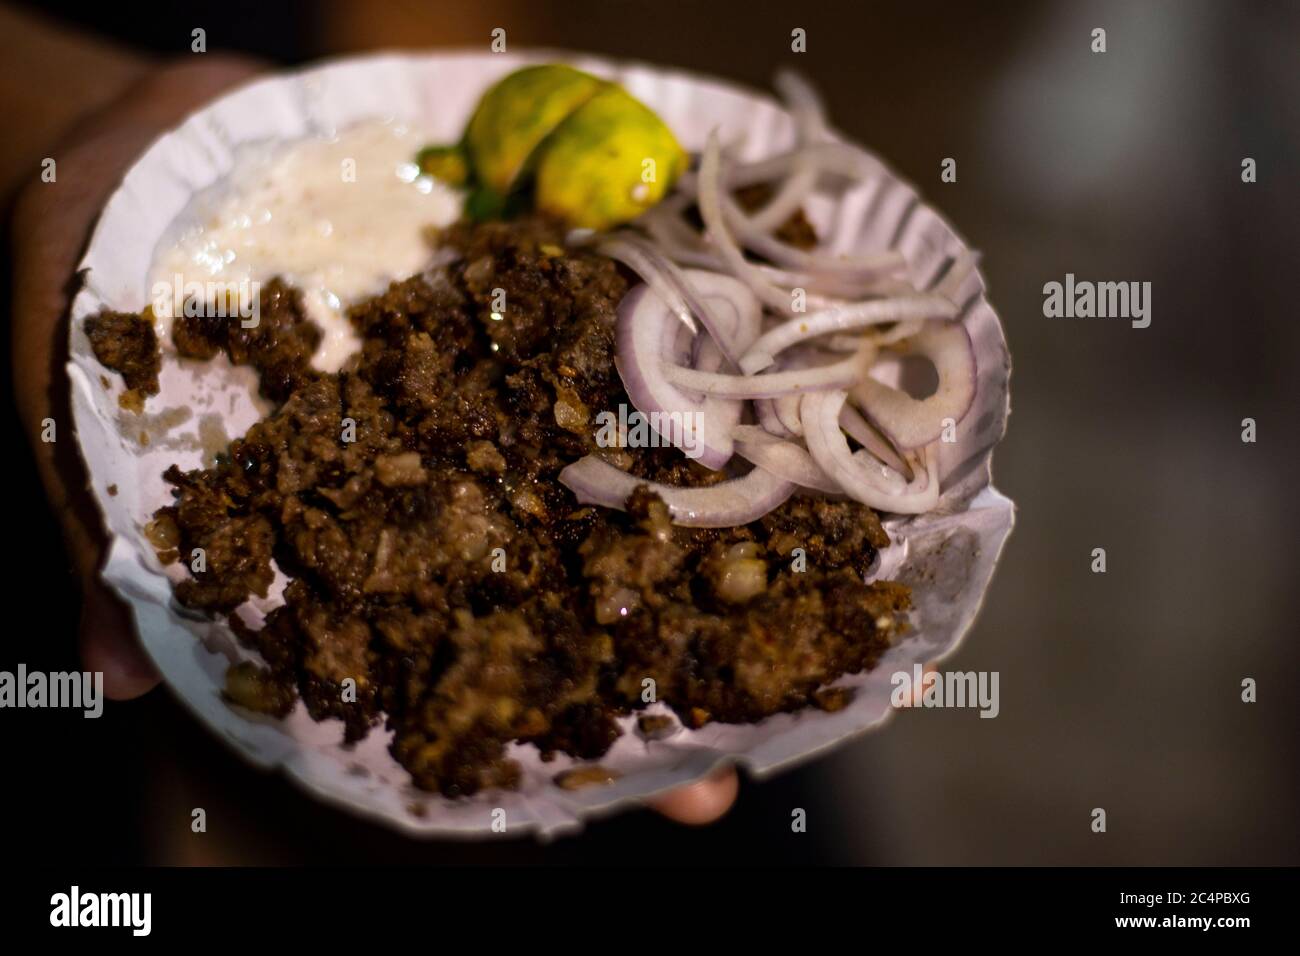 Sutli Kebab Being Served In Paper Plate Stock Photo